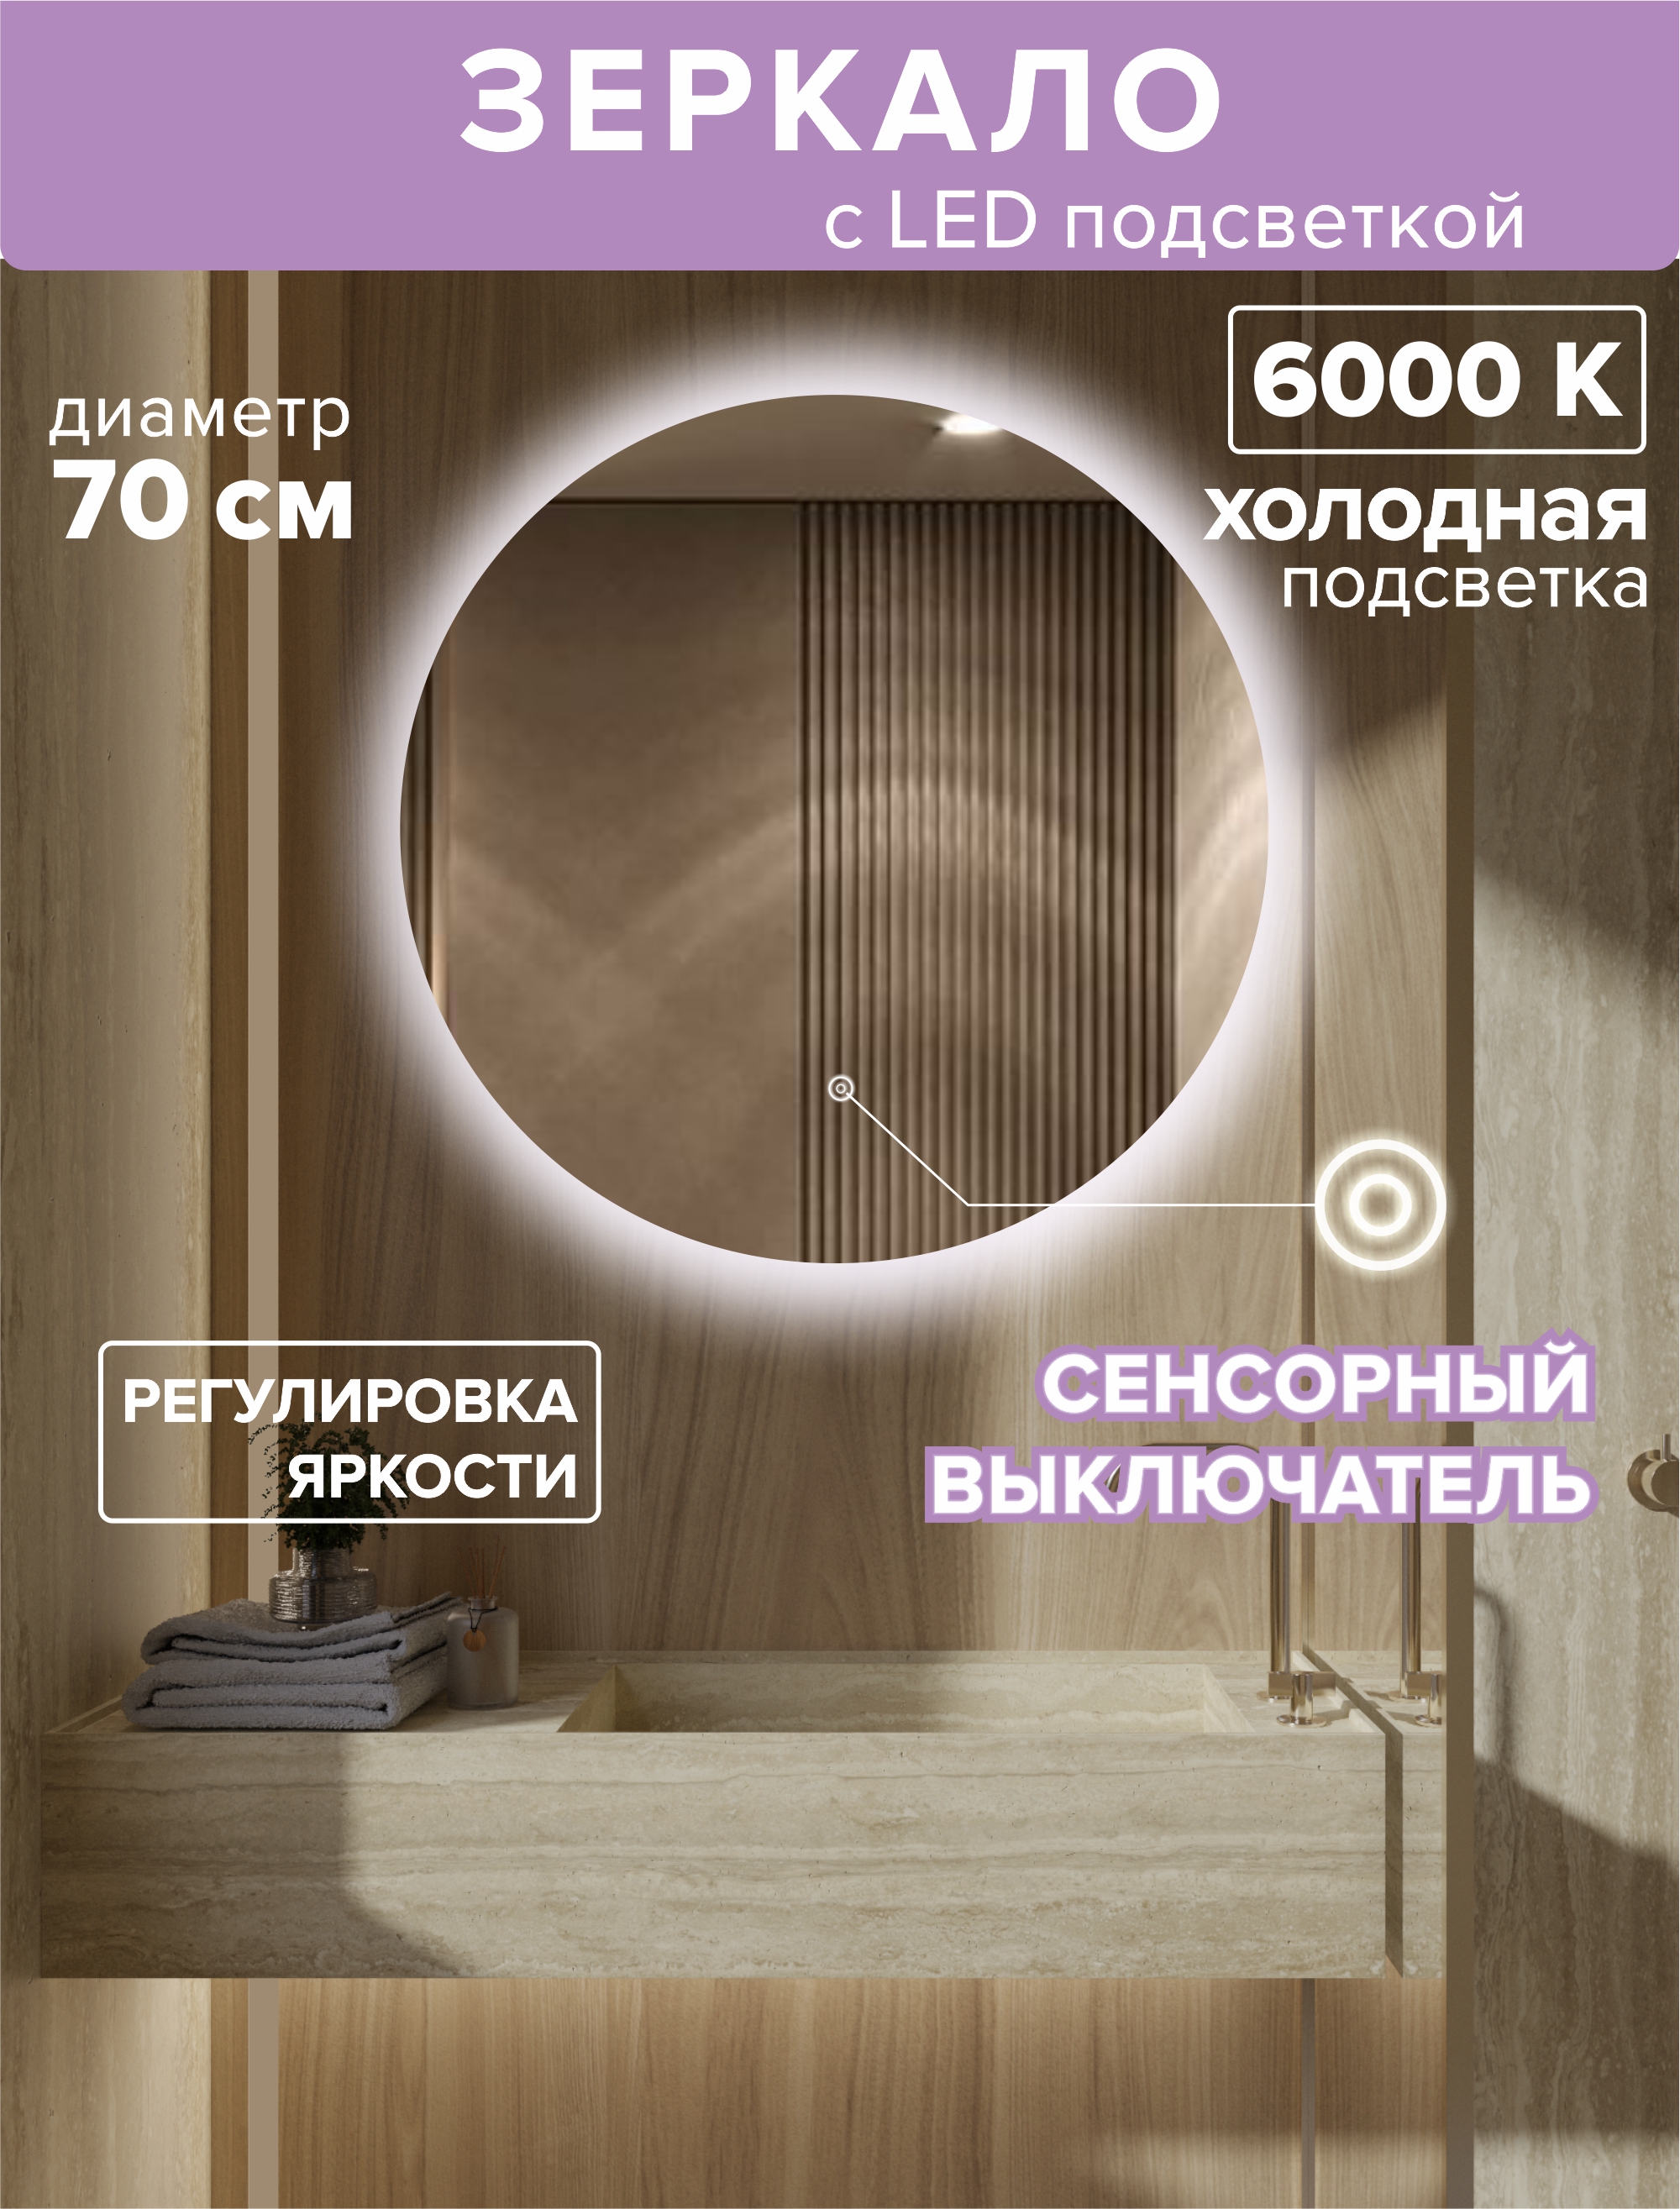 Зеркало с подсветкой круглое 70см. Подсветка холодная (6500К) подсветка для зеркал uniel 9 вт 720 лм нейтральный белый